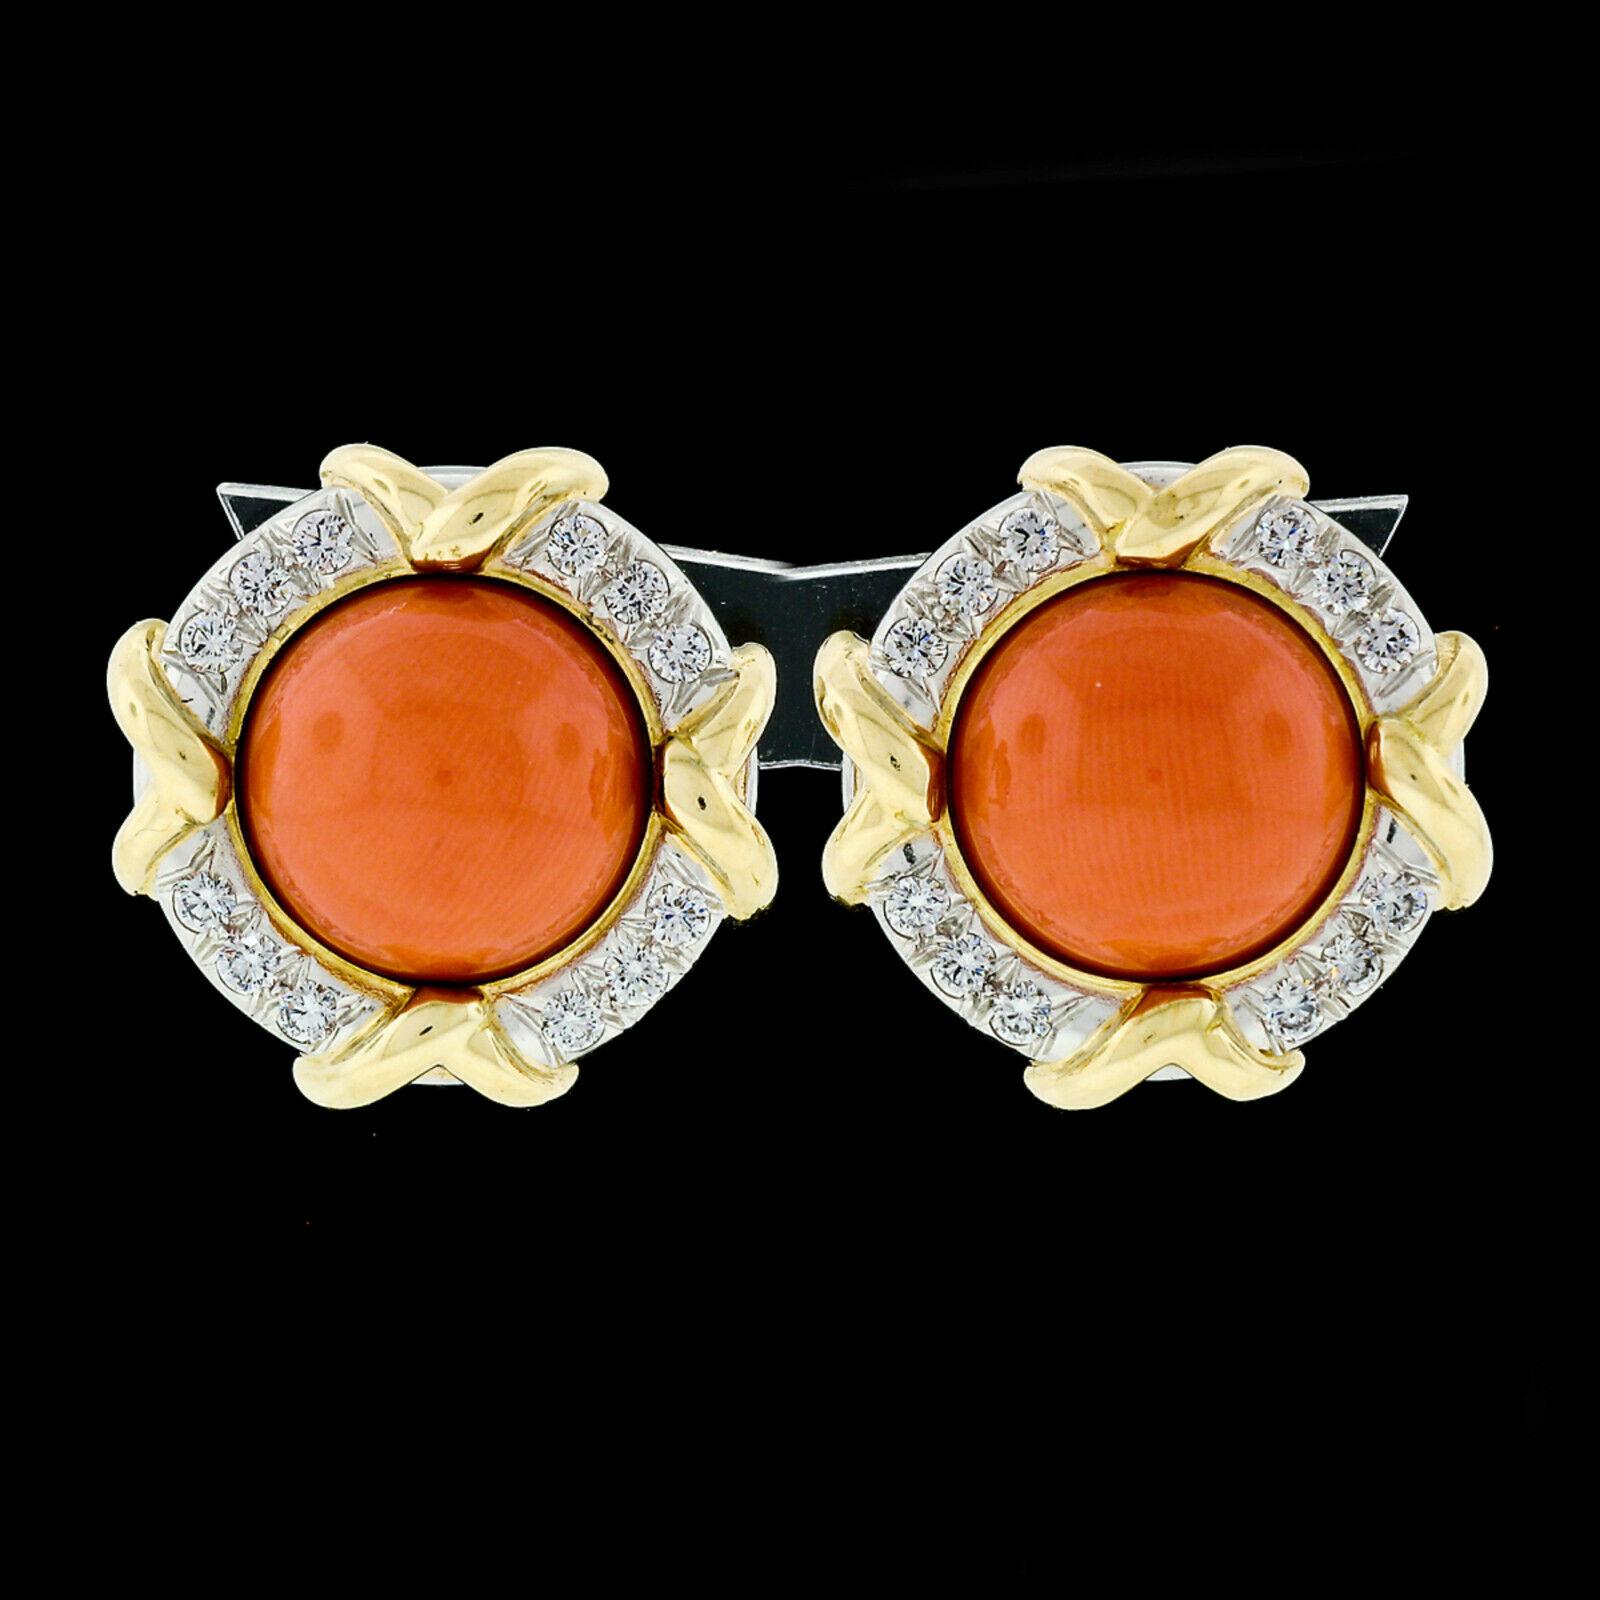 Vous avez devant vous une magnifique paire de boucles d'oreilles conçue en 1985 et réalisée en or jaune 18 carats et en platine 950 par Tiffany & Co. Les boucles d'oreilles sont constituées d'une paire de pierres de corail naturelles, certifiées